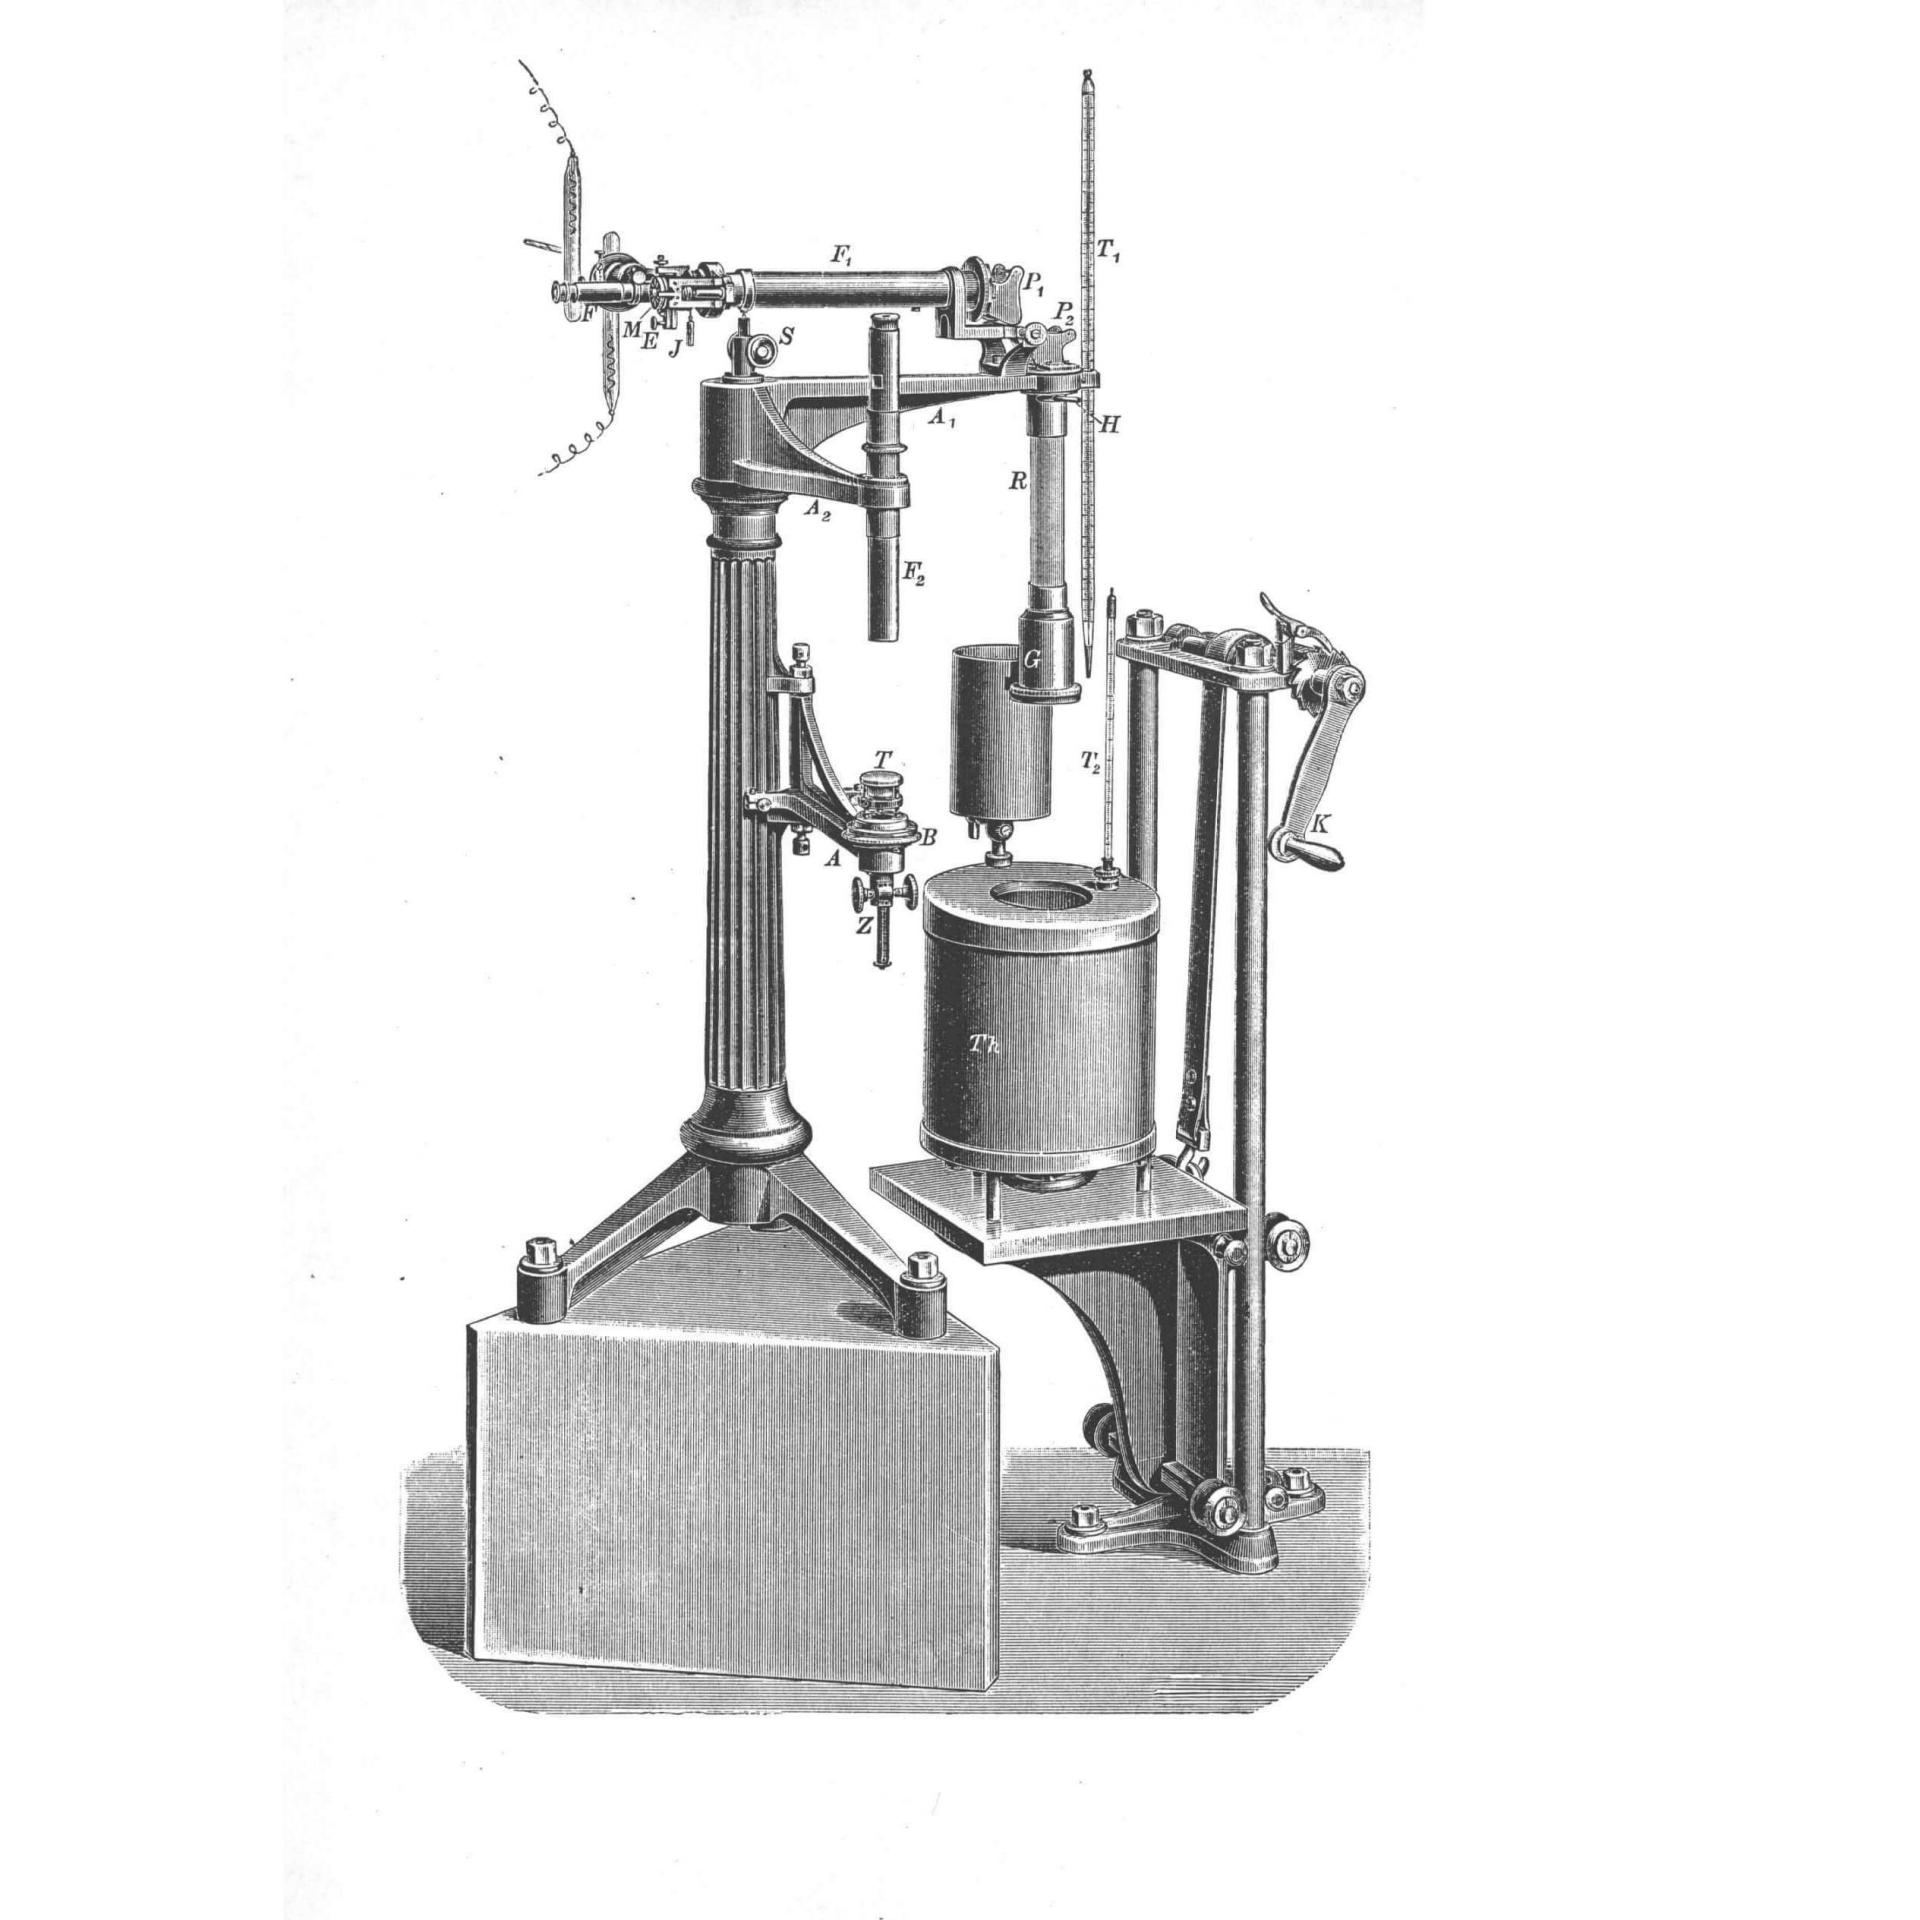 Abbesches Dilatometer, 1893.